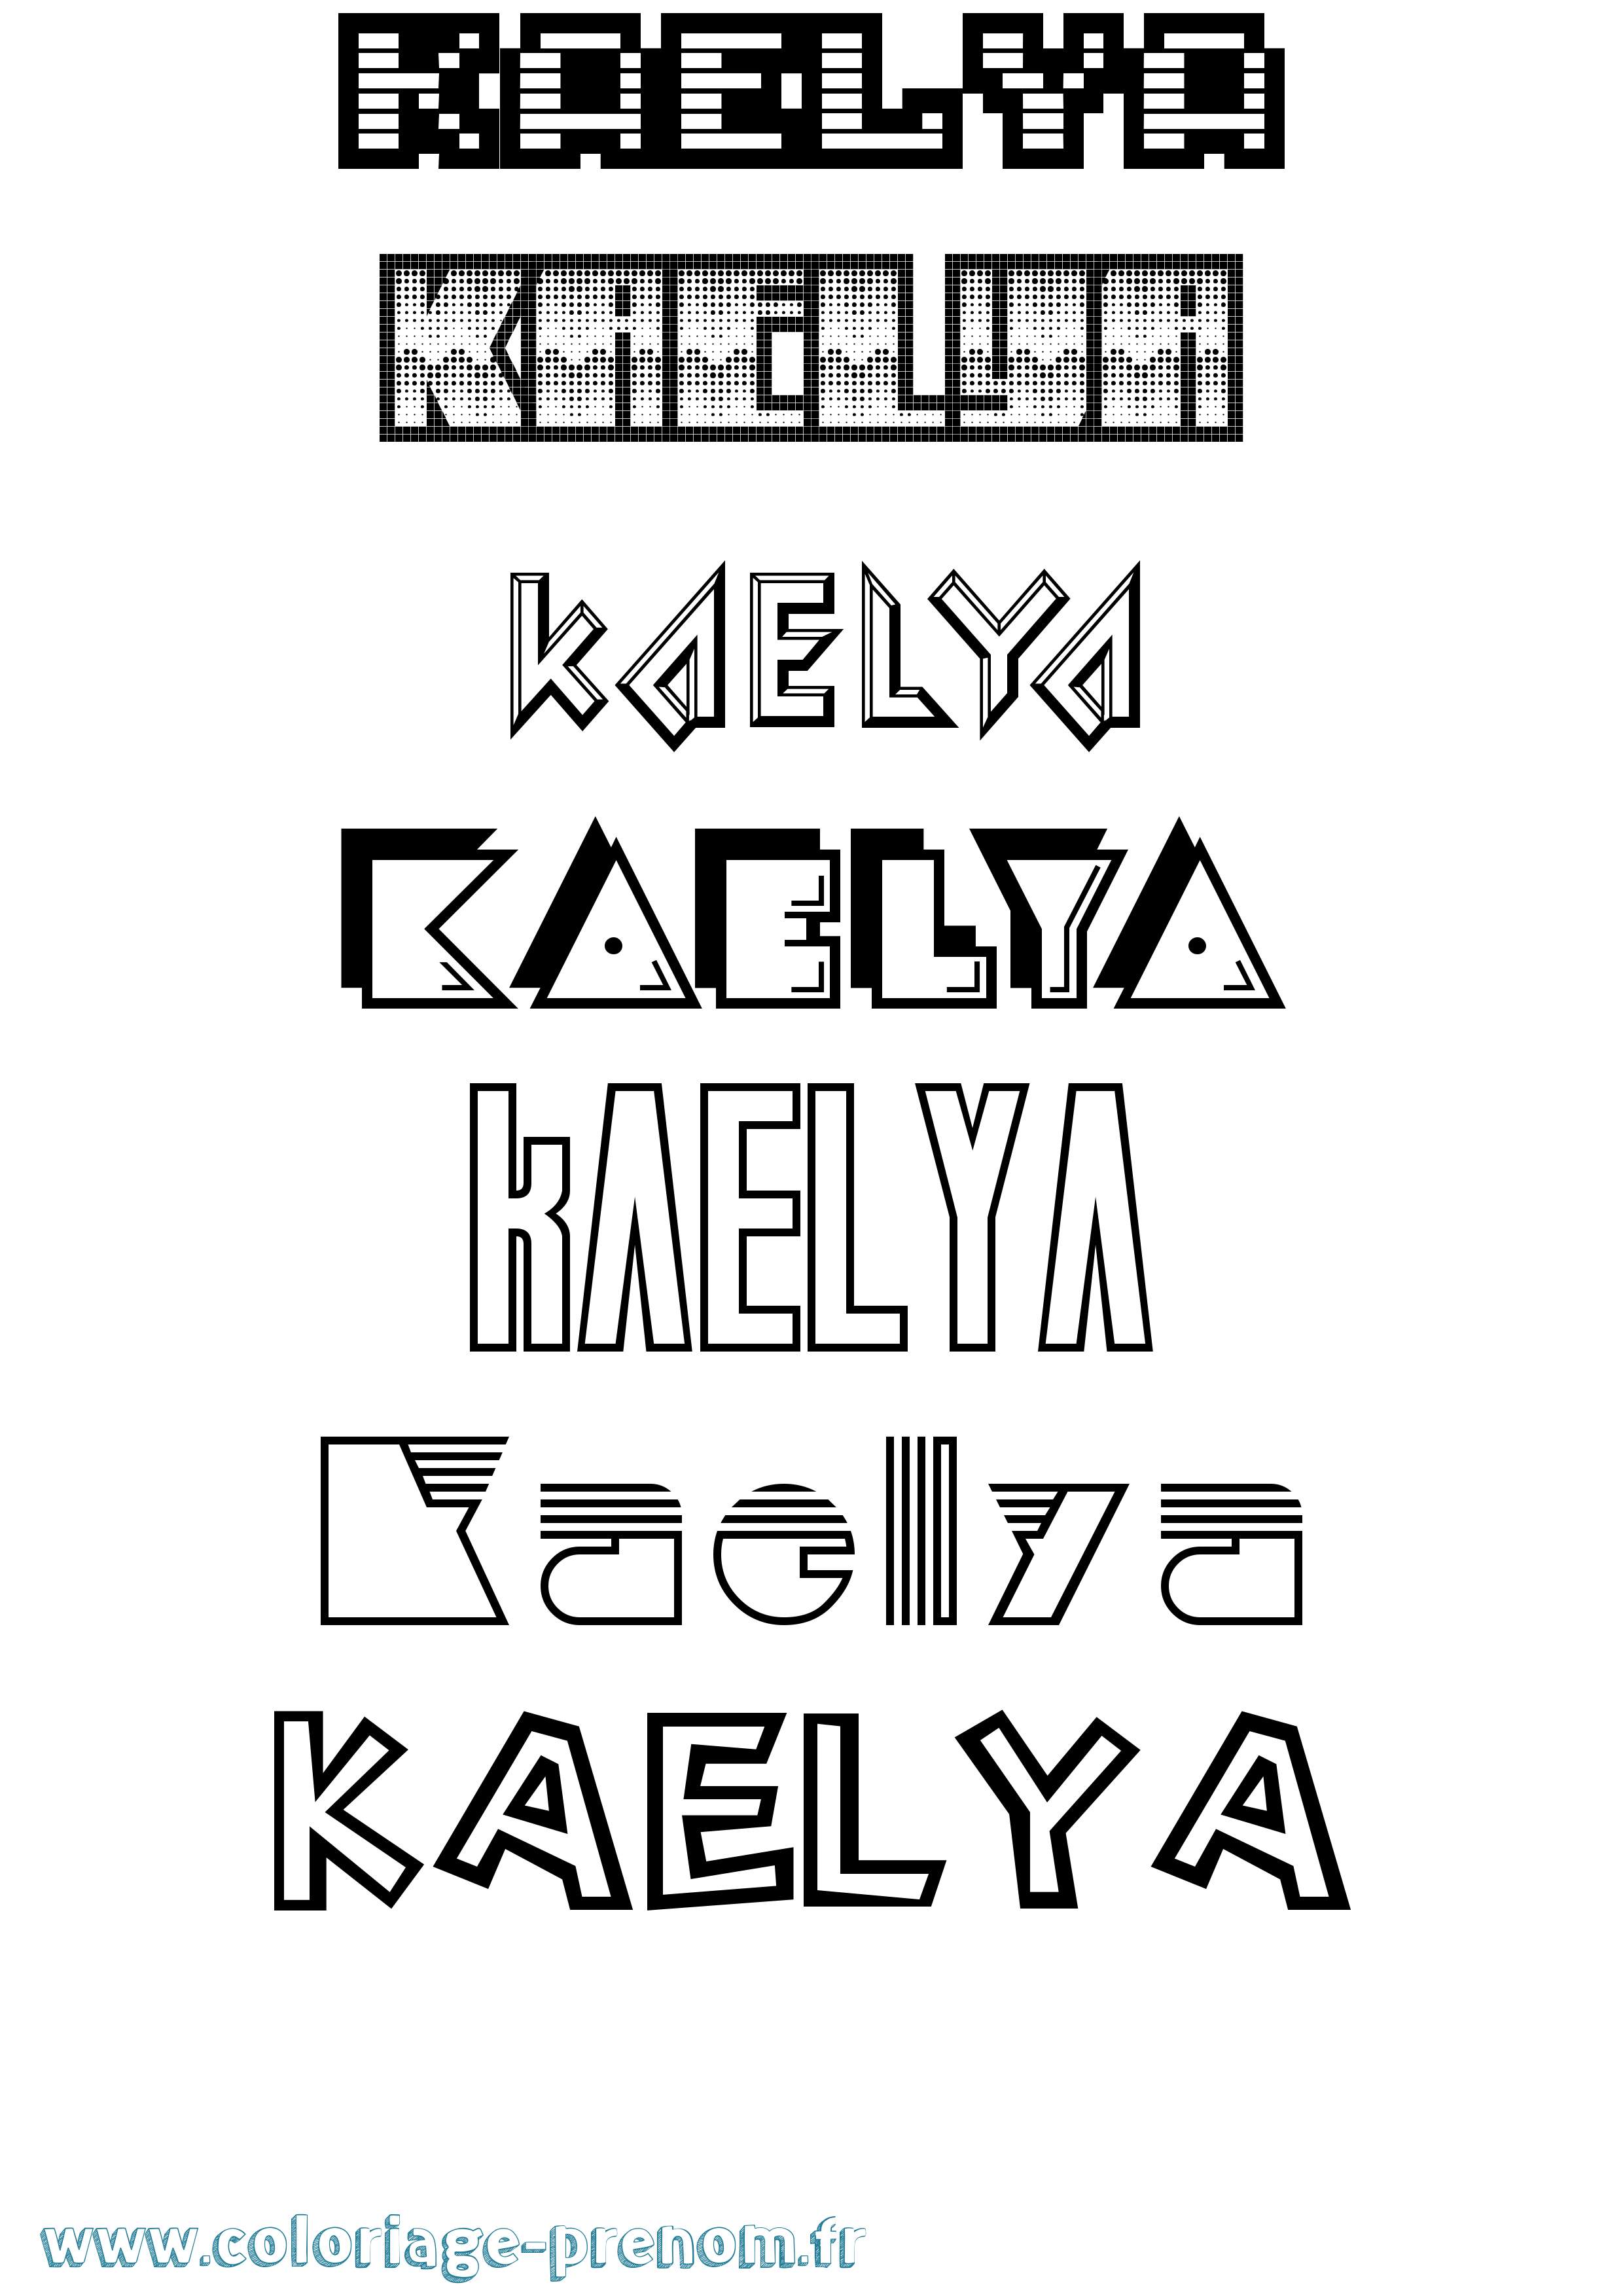 Coloriage prénom Kaelya Jeux Vidéos